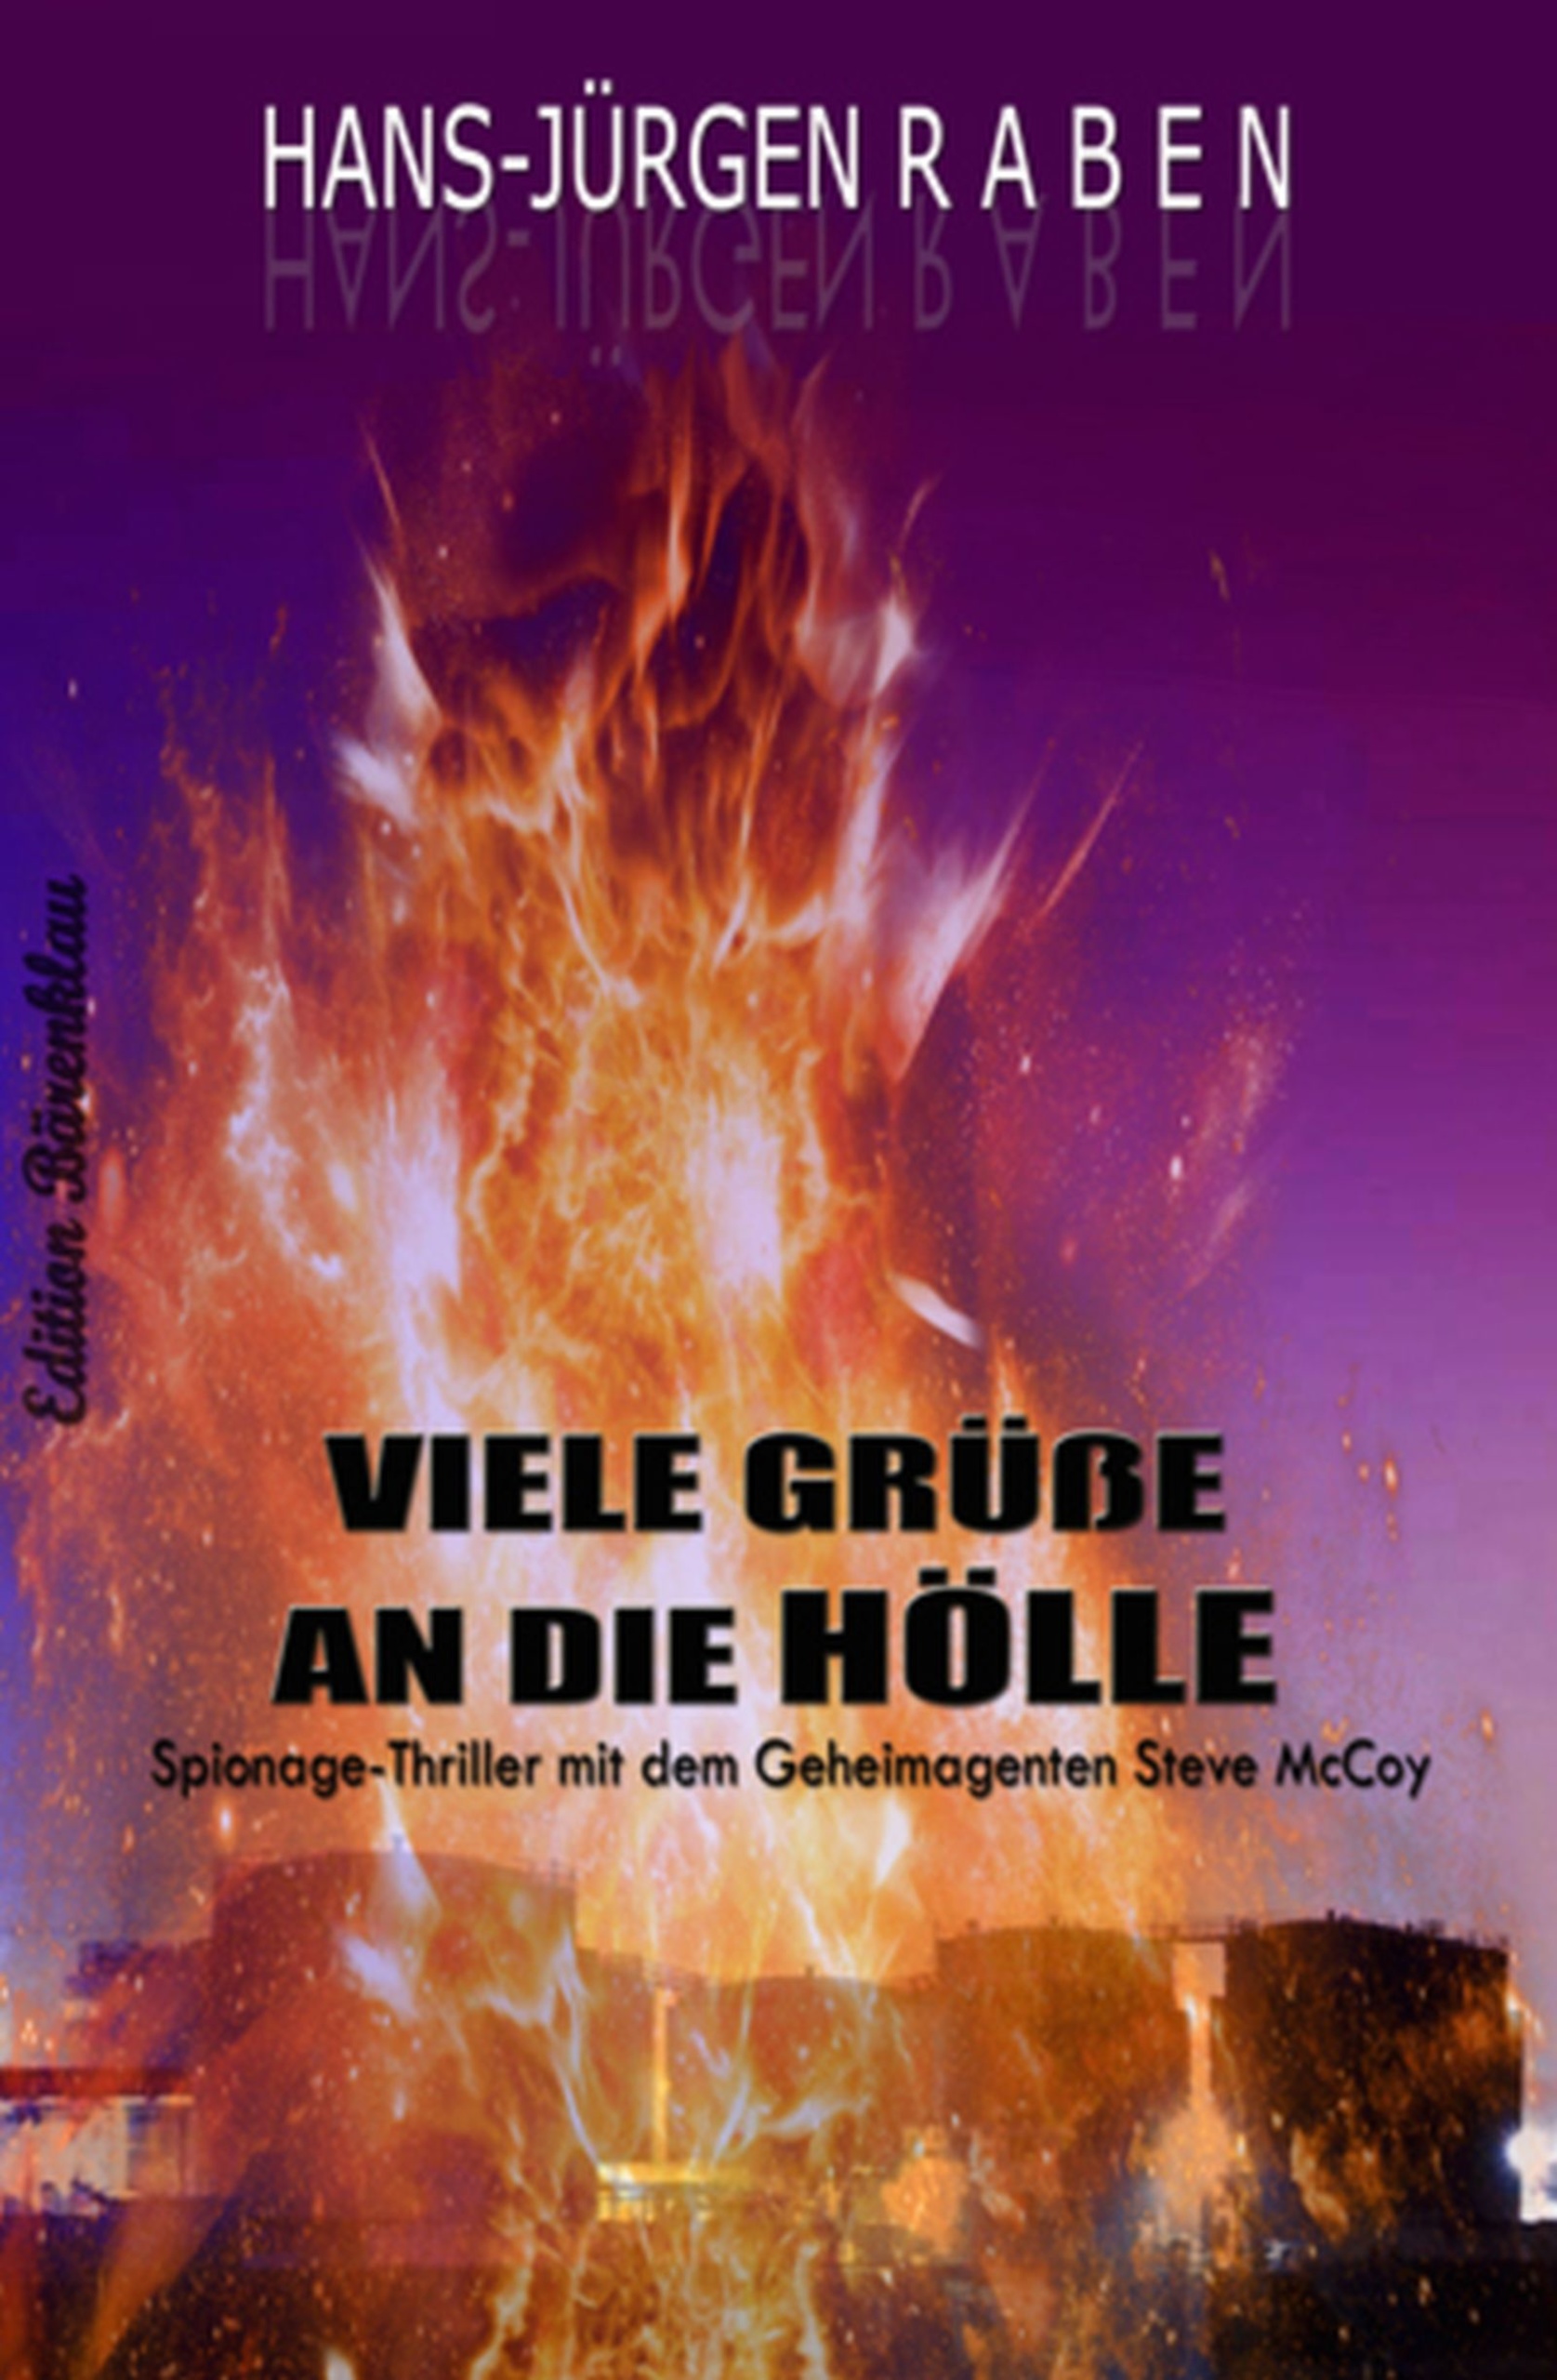 Viele Grüße an die Hölle (HansJürgen Raben Uksak EBooks)